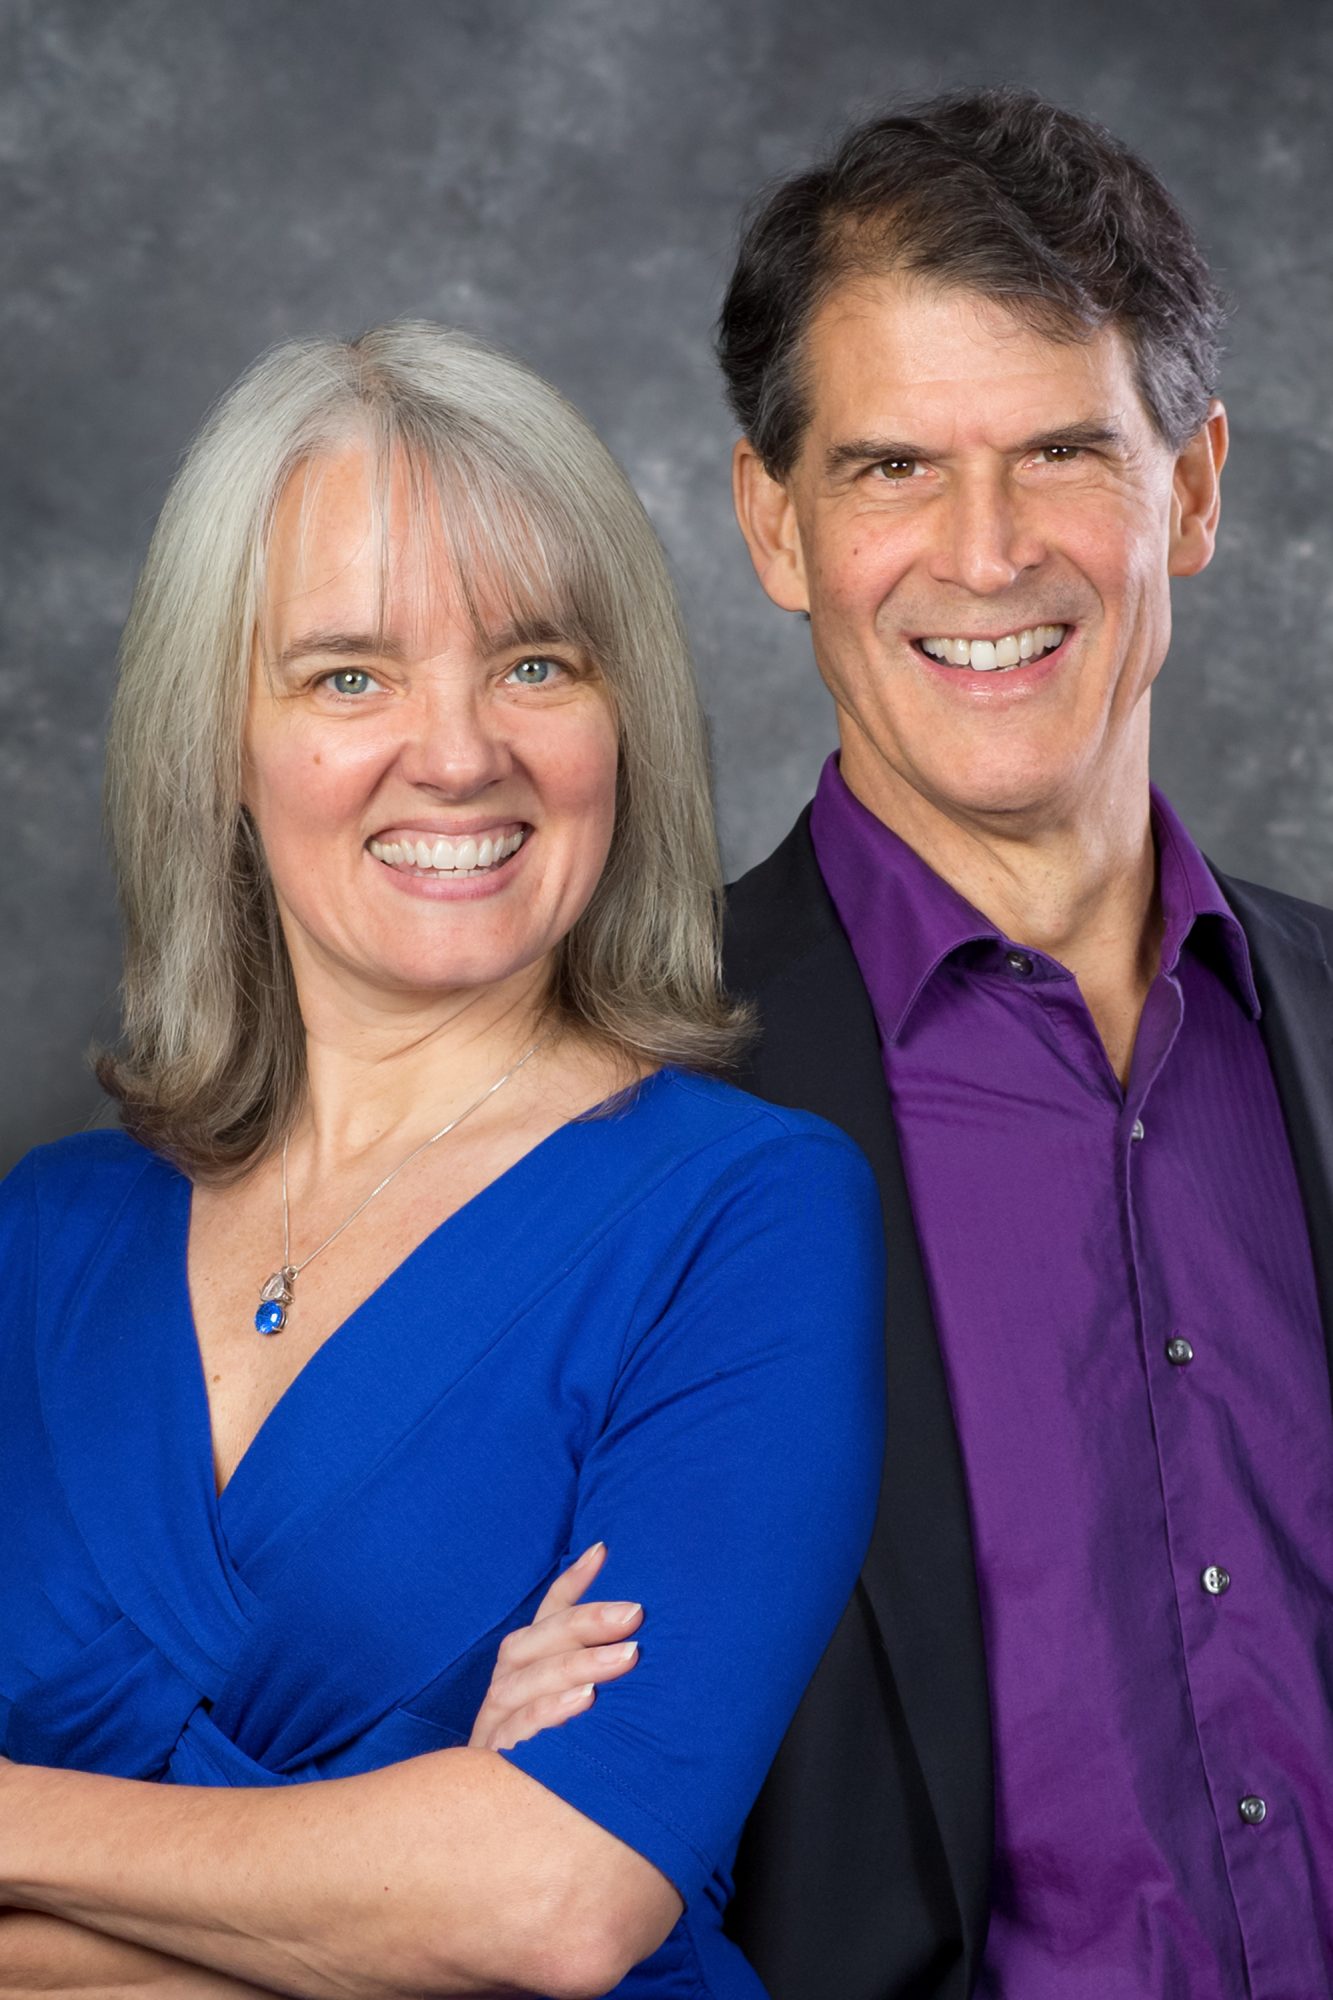 Portrait of Dr. Eben Alexander & Karen Newell.